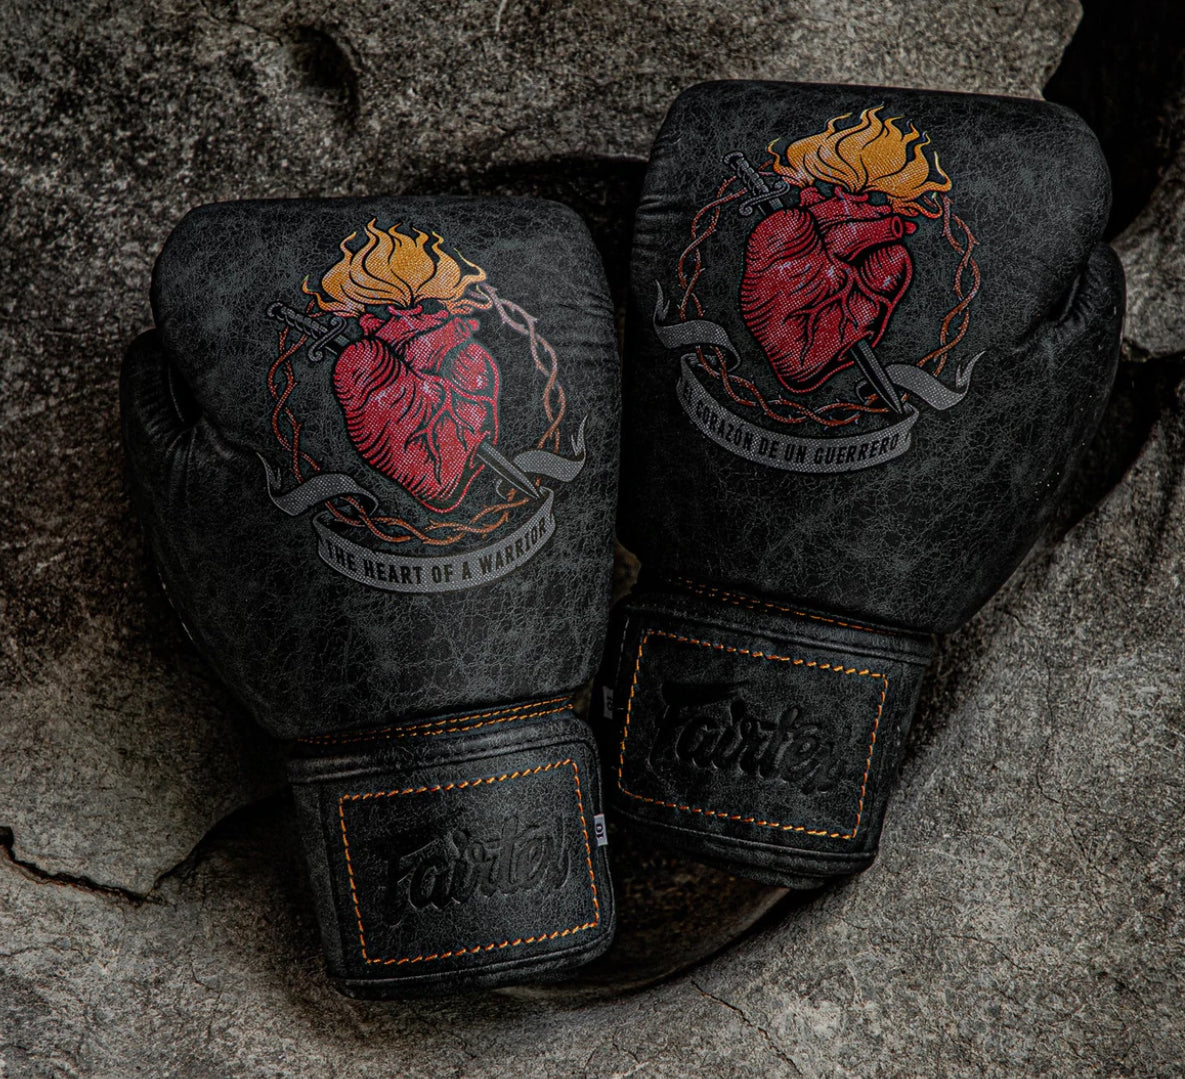 泰拳拳套 Thai Boxing Gloves : Fairtex BGV-The Heart of Warrior Premium Muay Thai Boxing Glove - Limited Edition